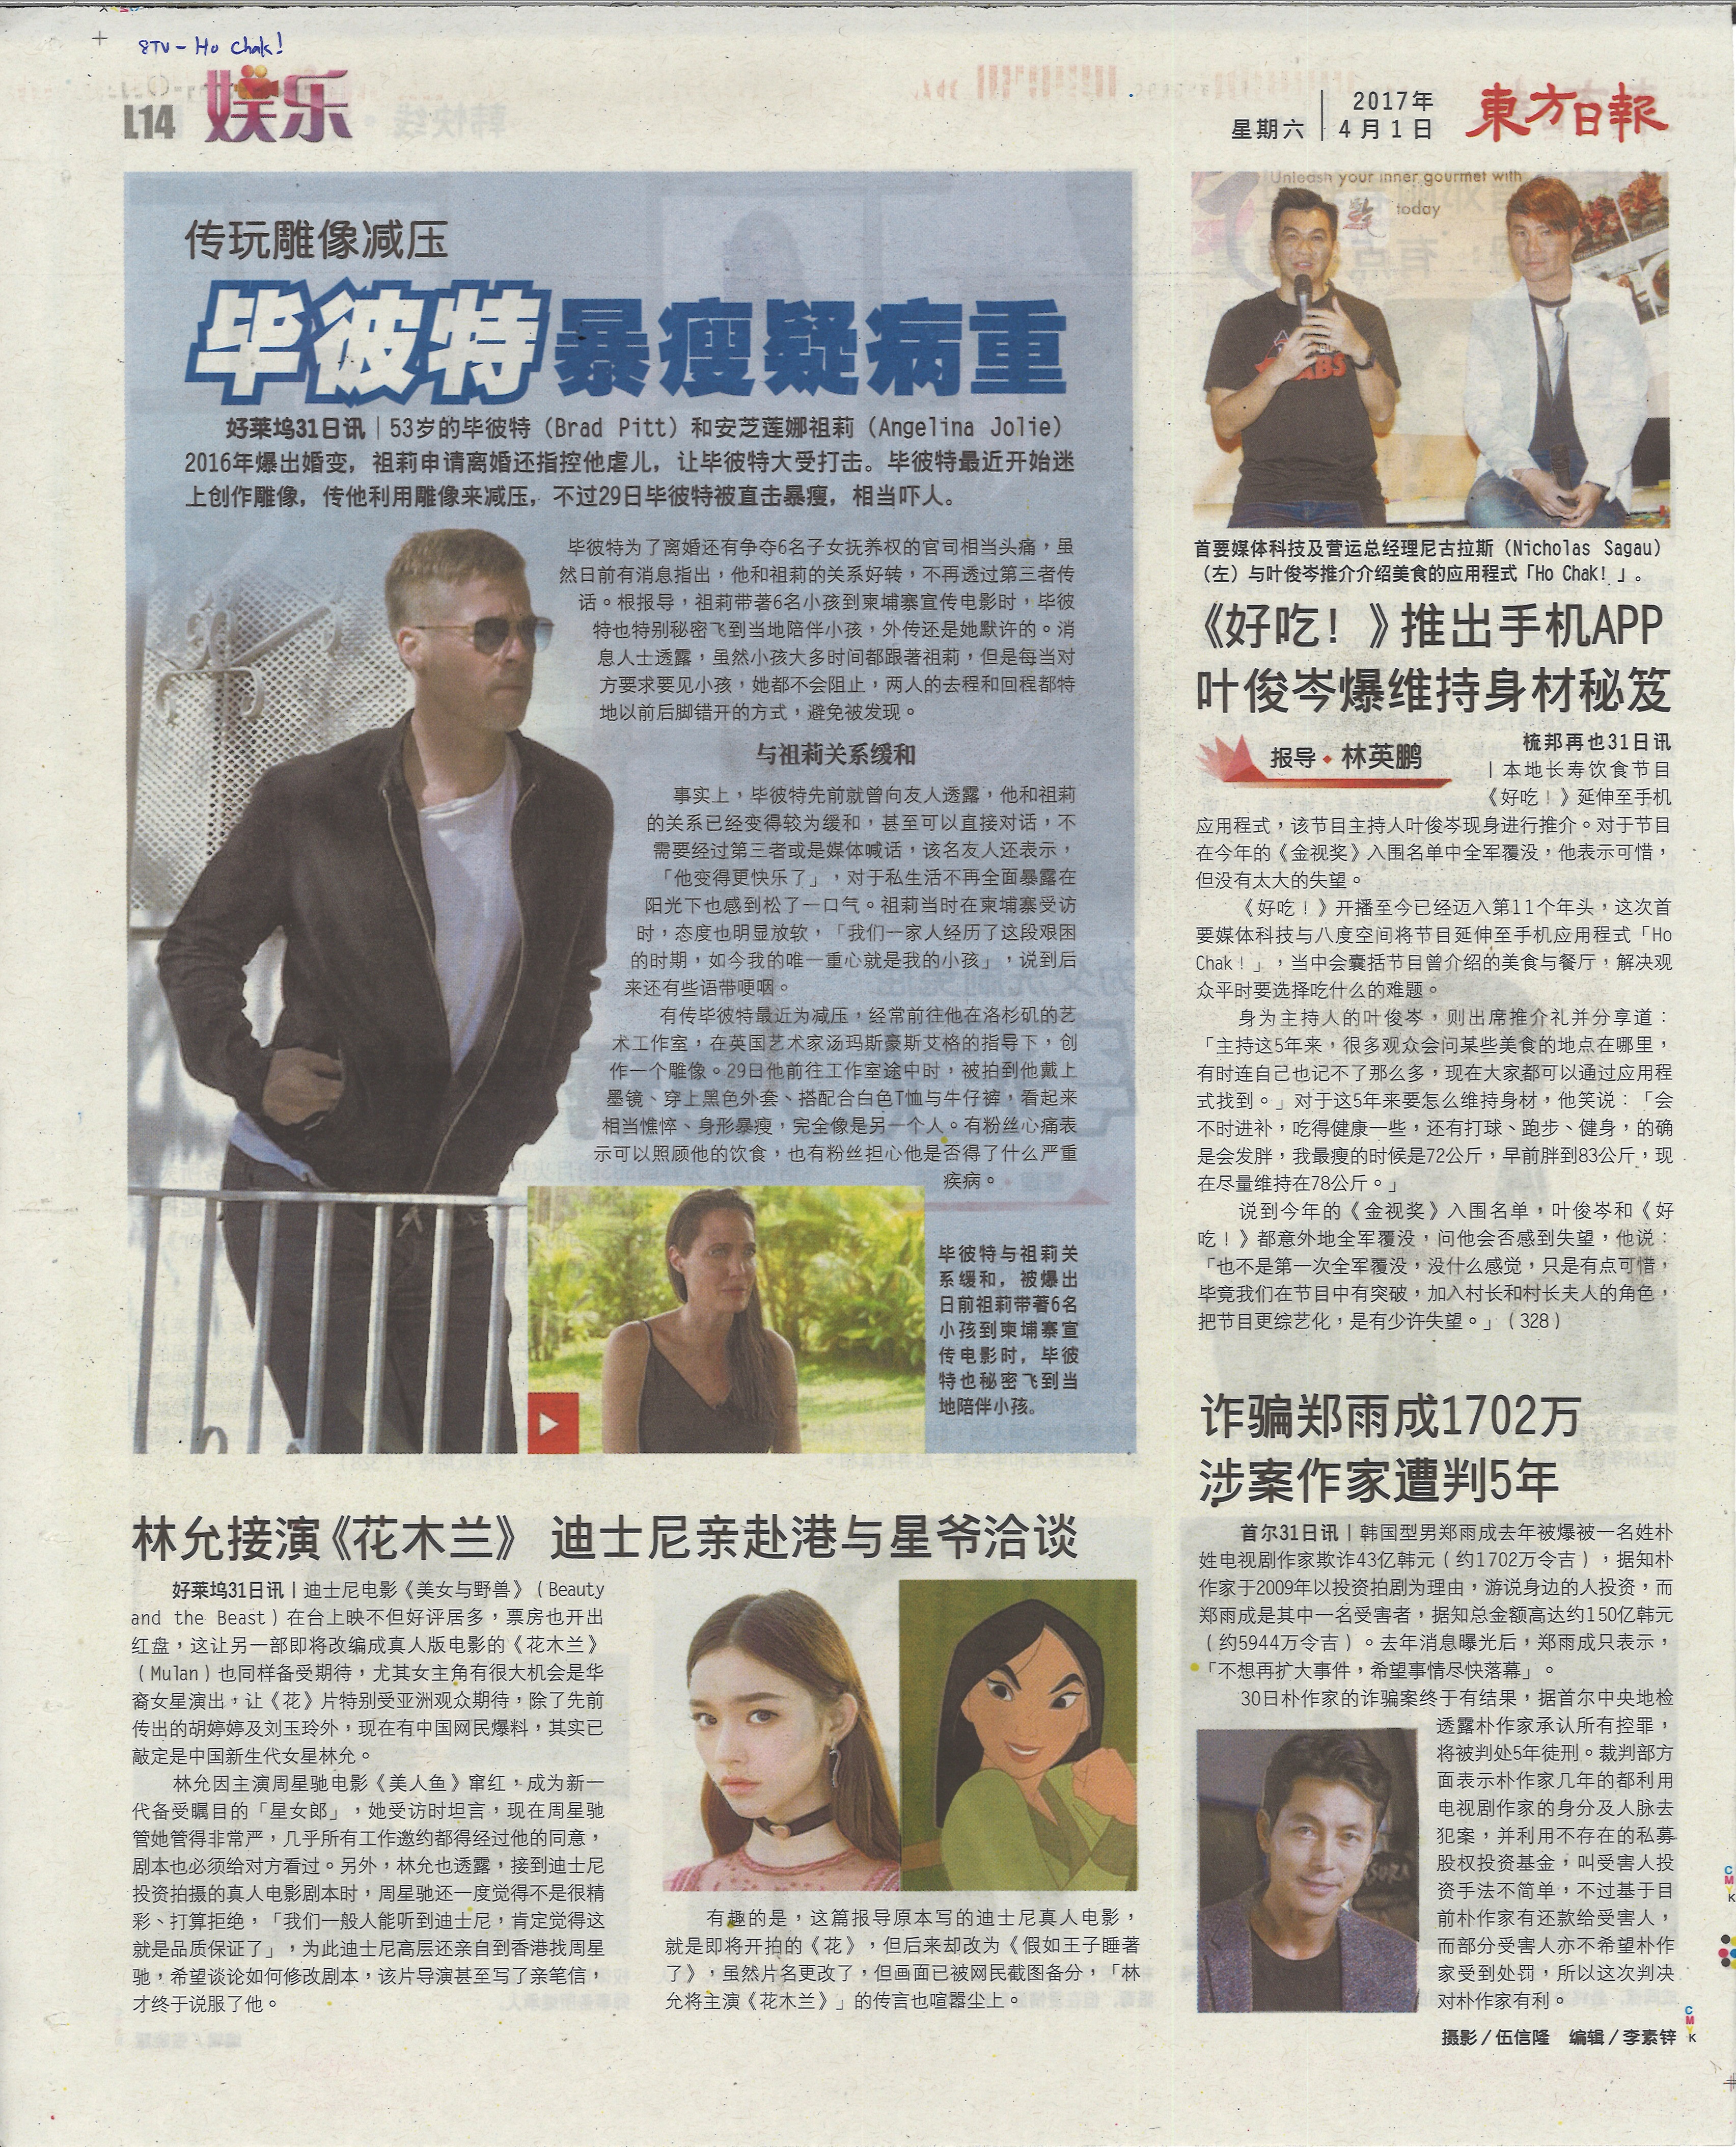 Ho Chak App (Oriental Daily)